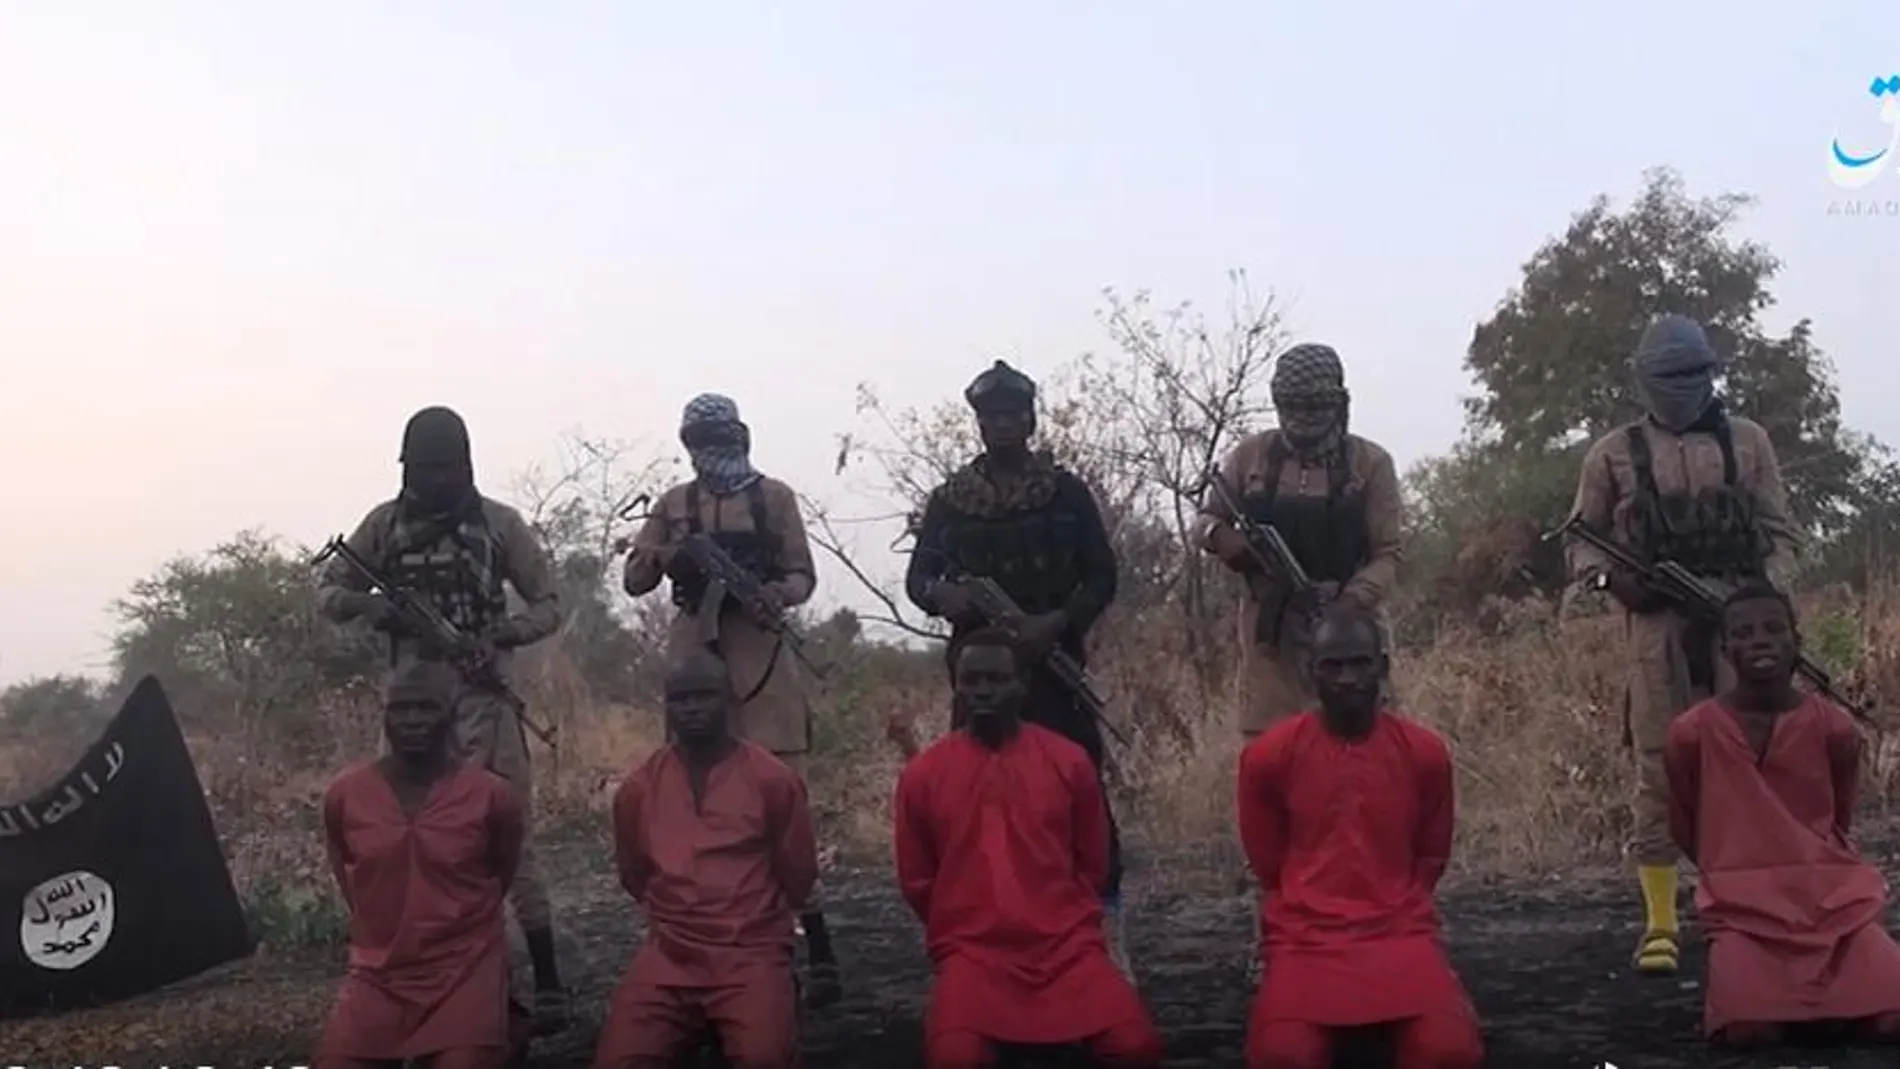 Captura de un vídeo difundido por el Estado Islámico momentos antes de asesinar a varios cristianos